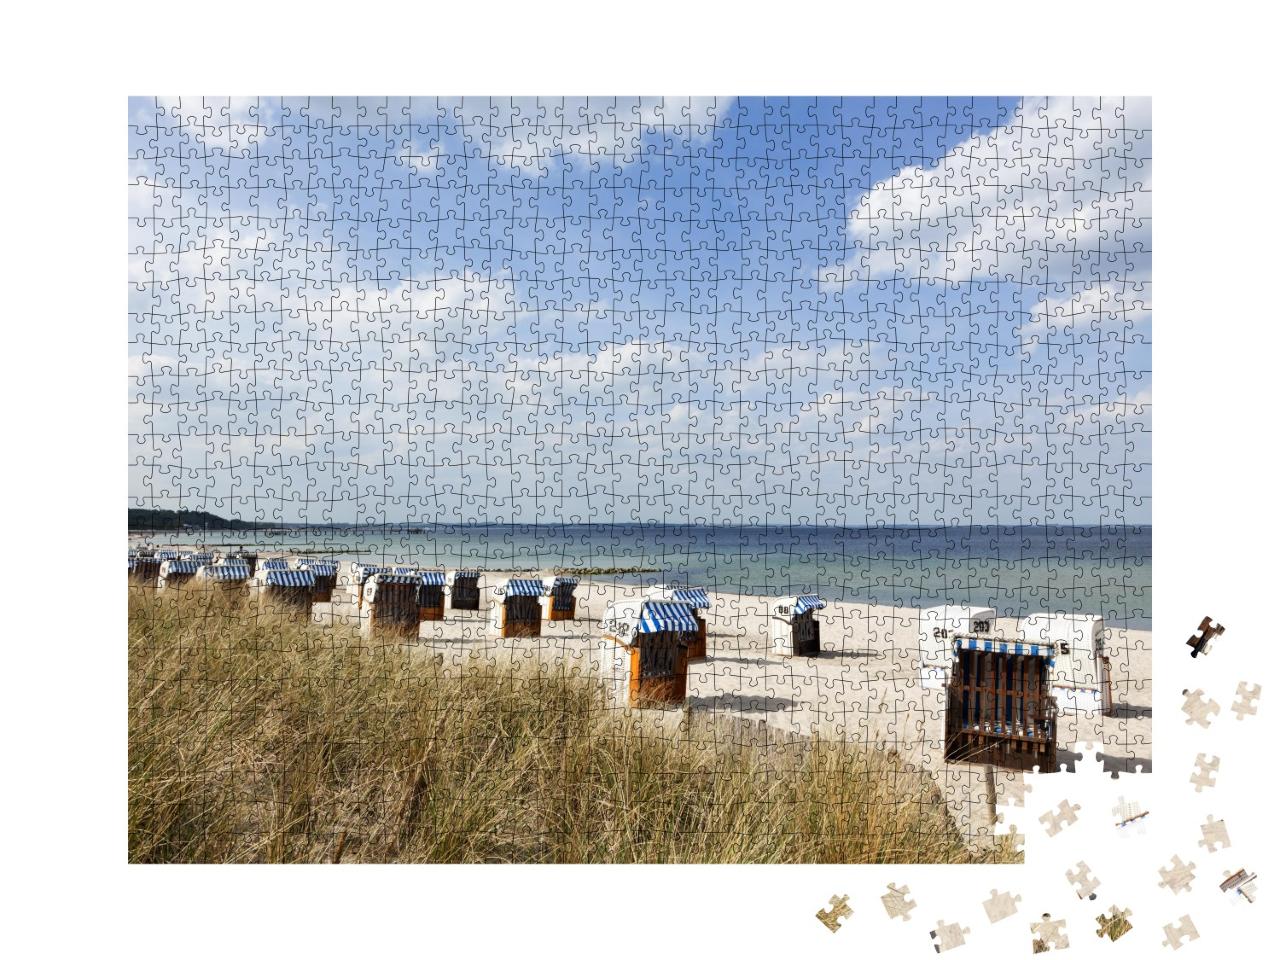 Puzzle de 1000 pièces « Chaises de plage à Timmendorfer Strand, côte de la mer Baltique »